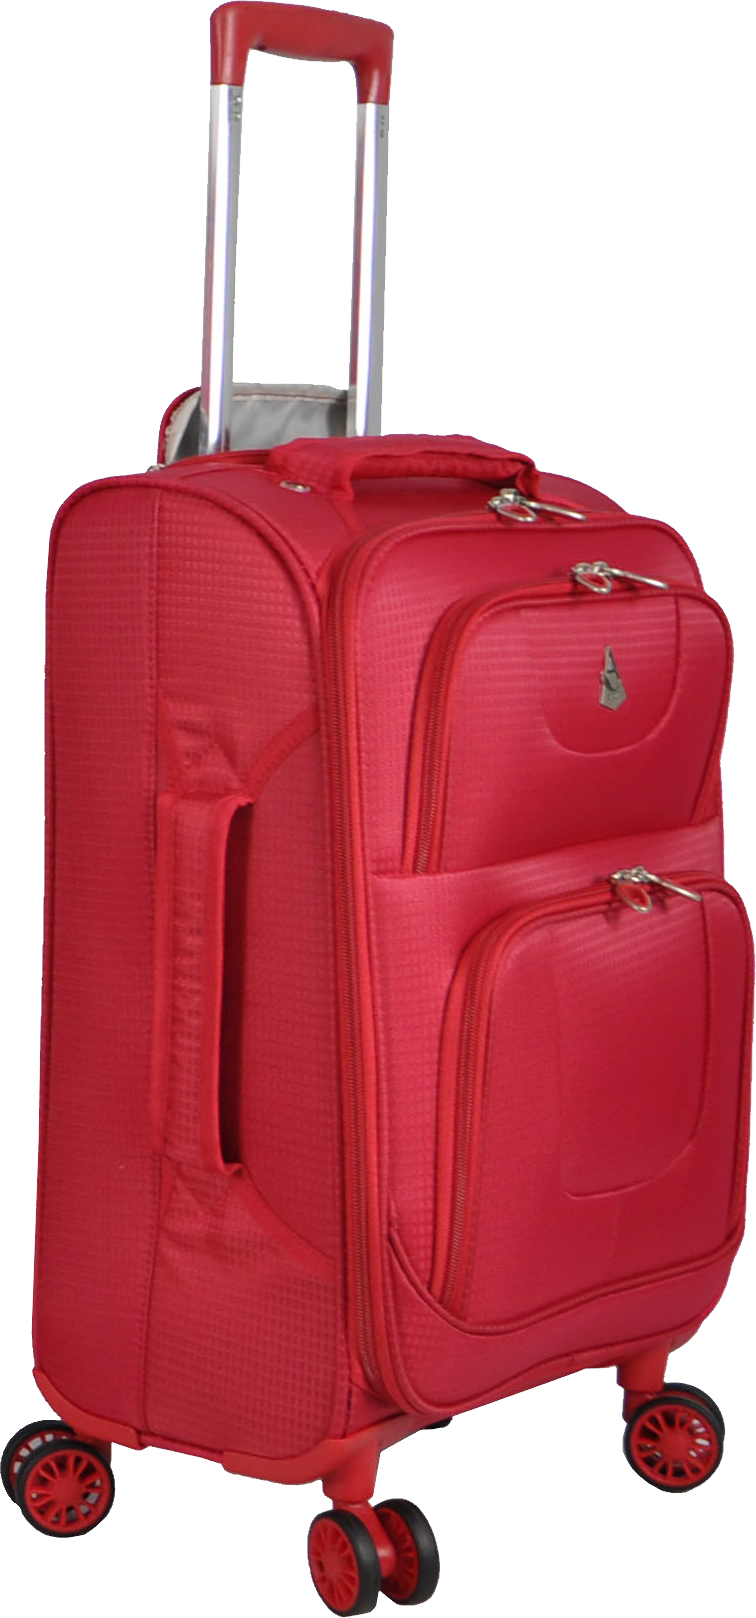 กระเป๋าเดินทางสีชมพู